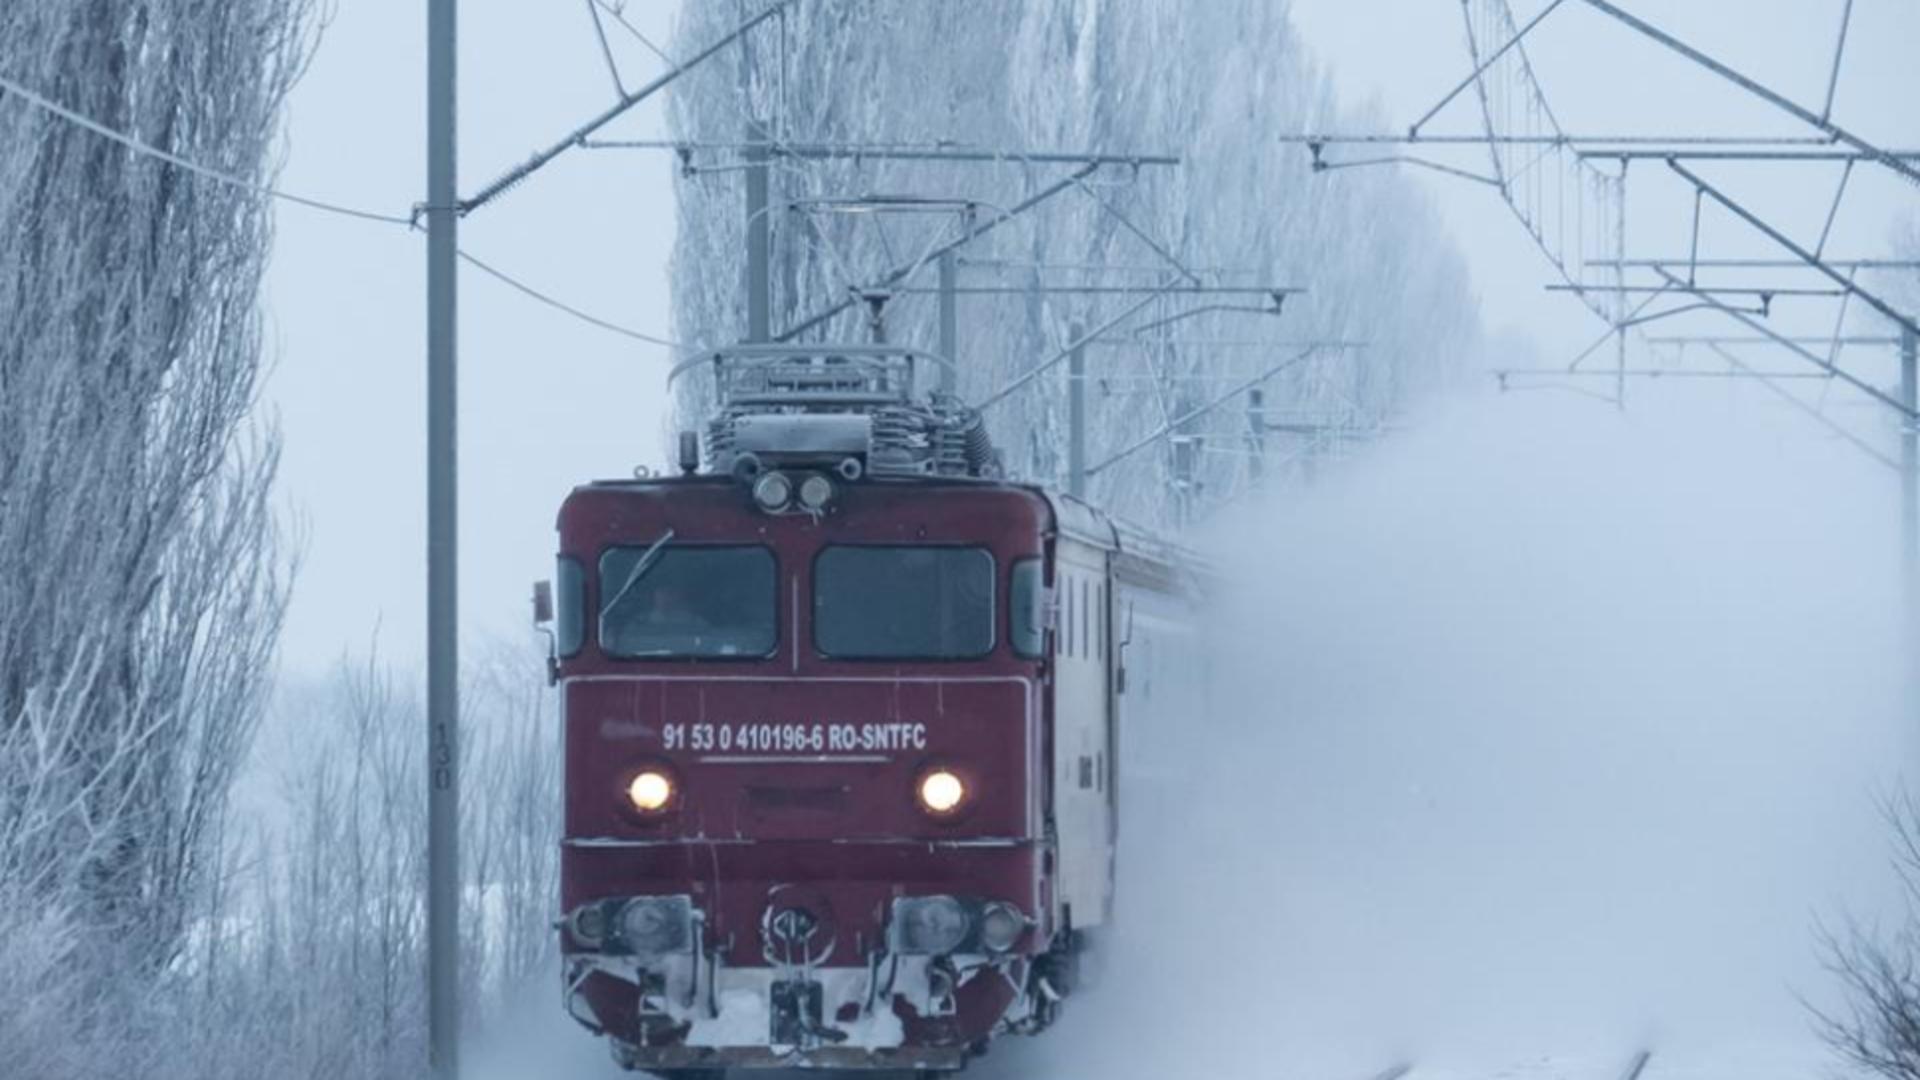 Trenurile circula in conditii de iarna